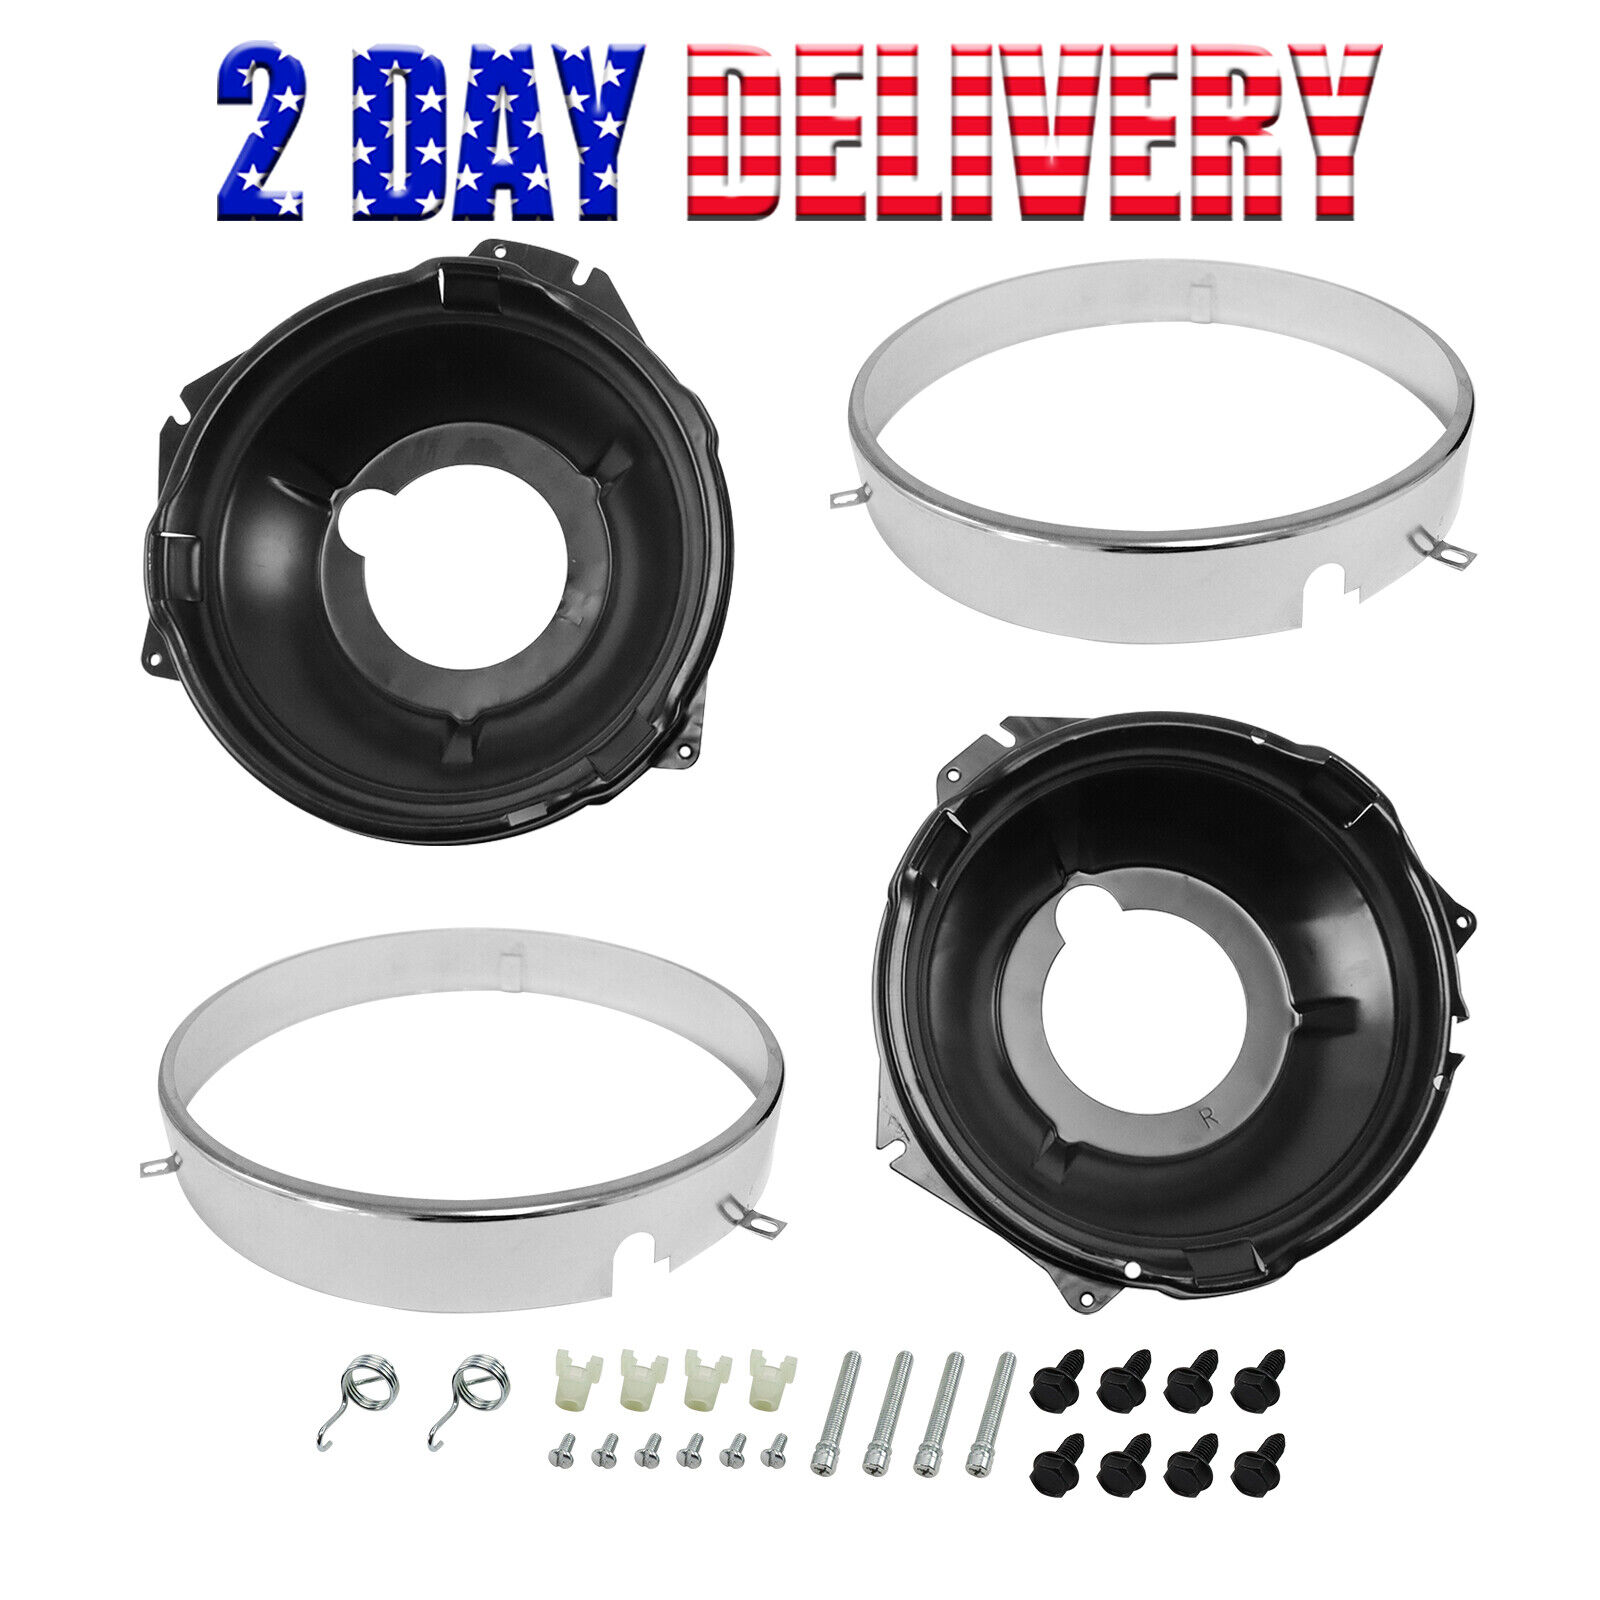 For 67-70 Camaro Nova Headlamp Retaining Ring Mounting Bucket Kit w/ hardware